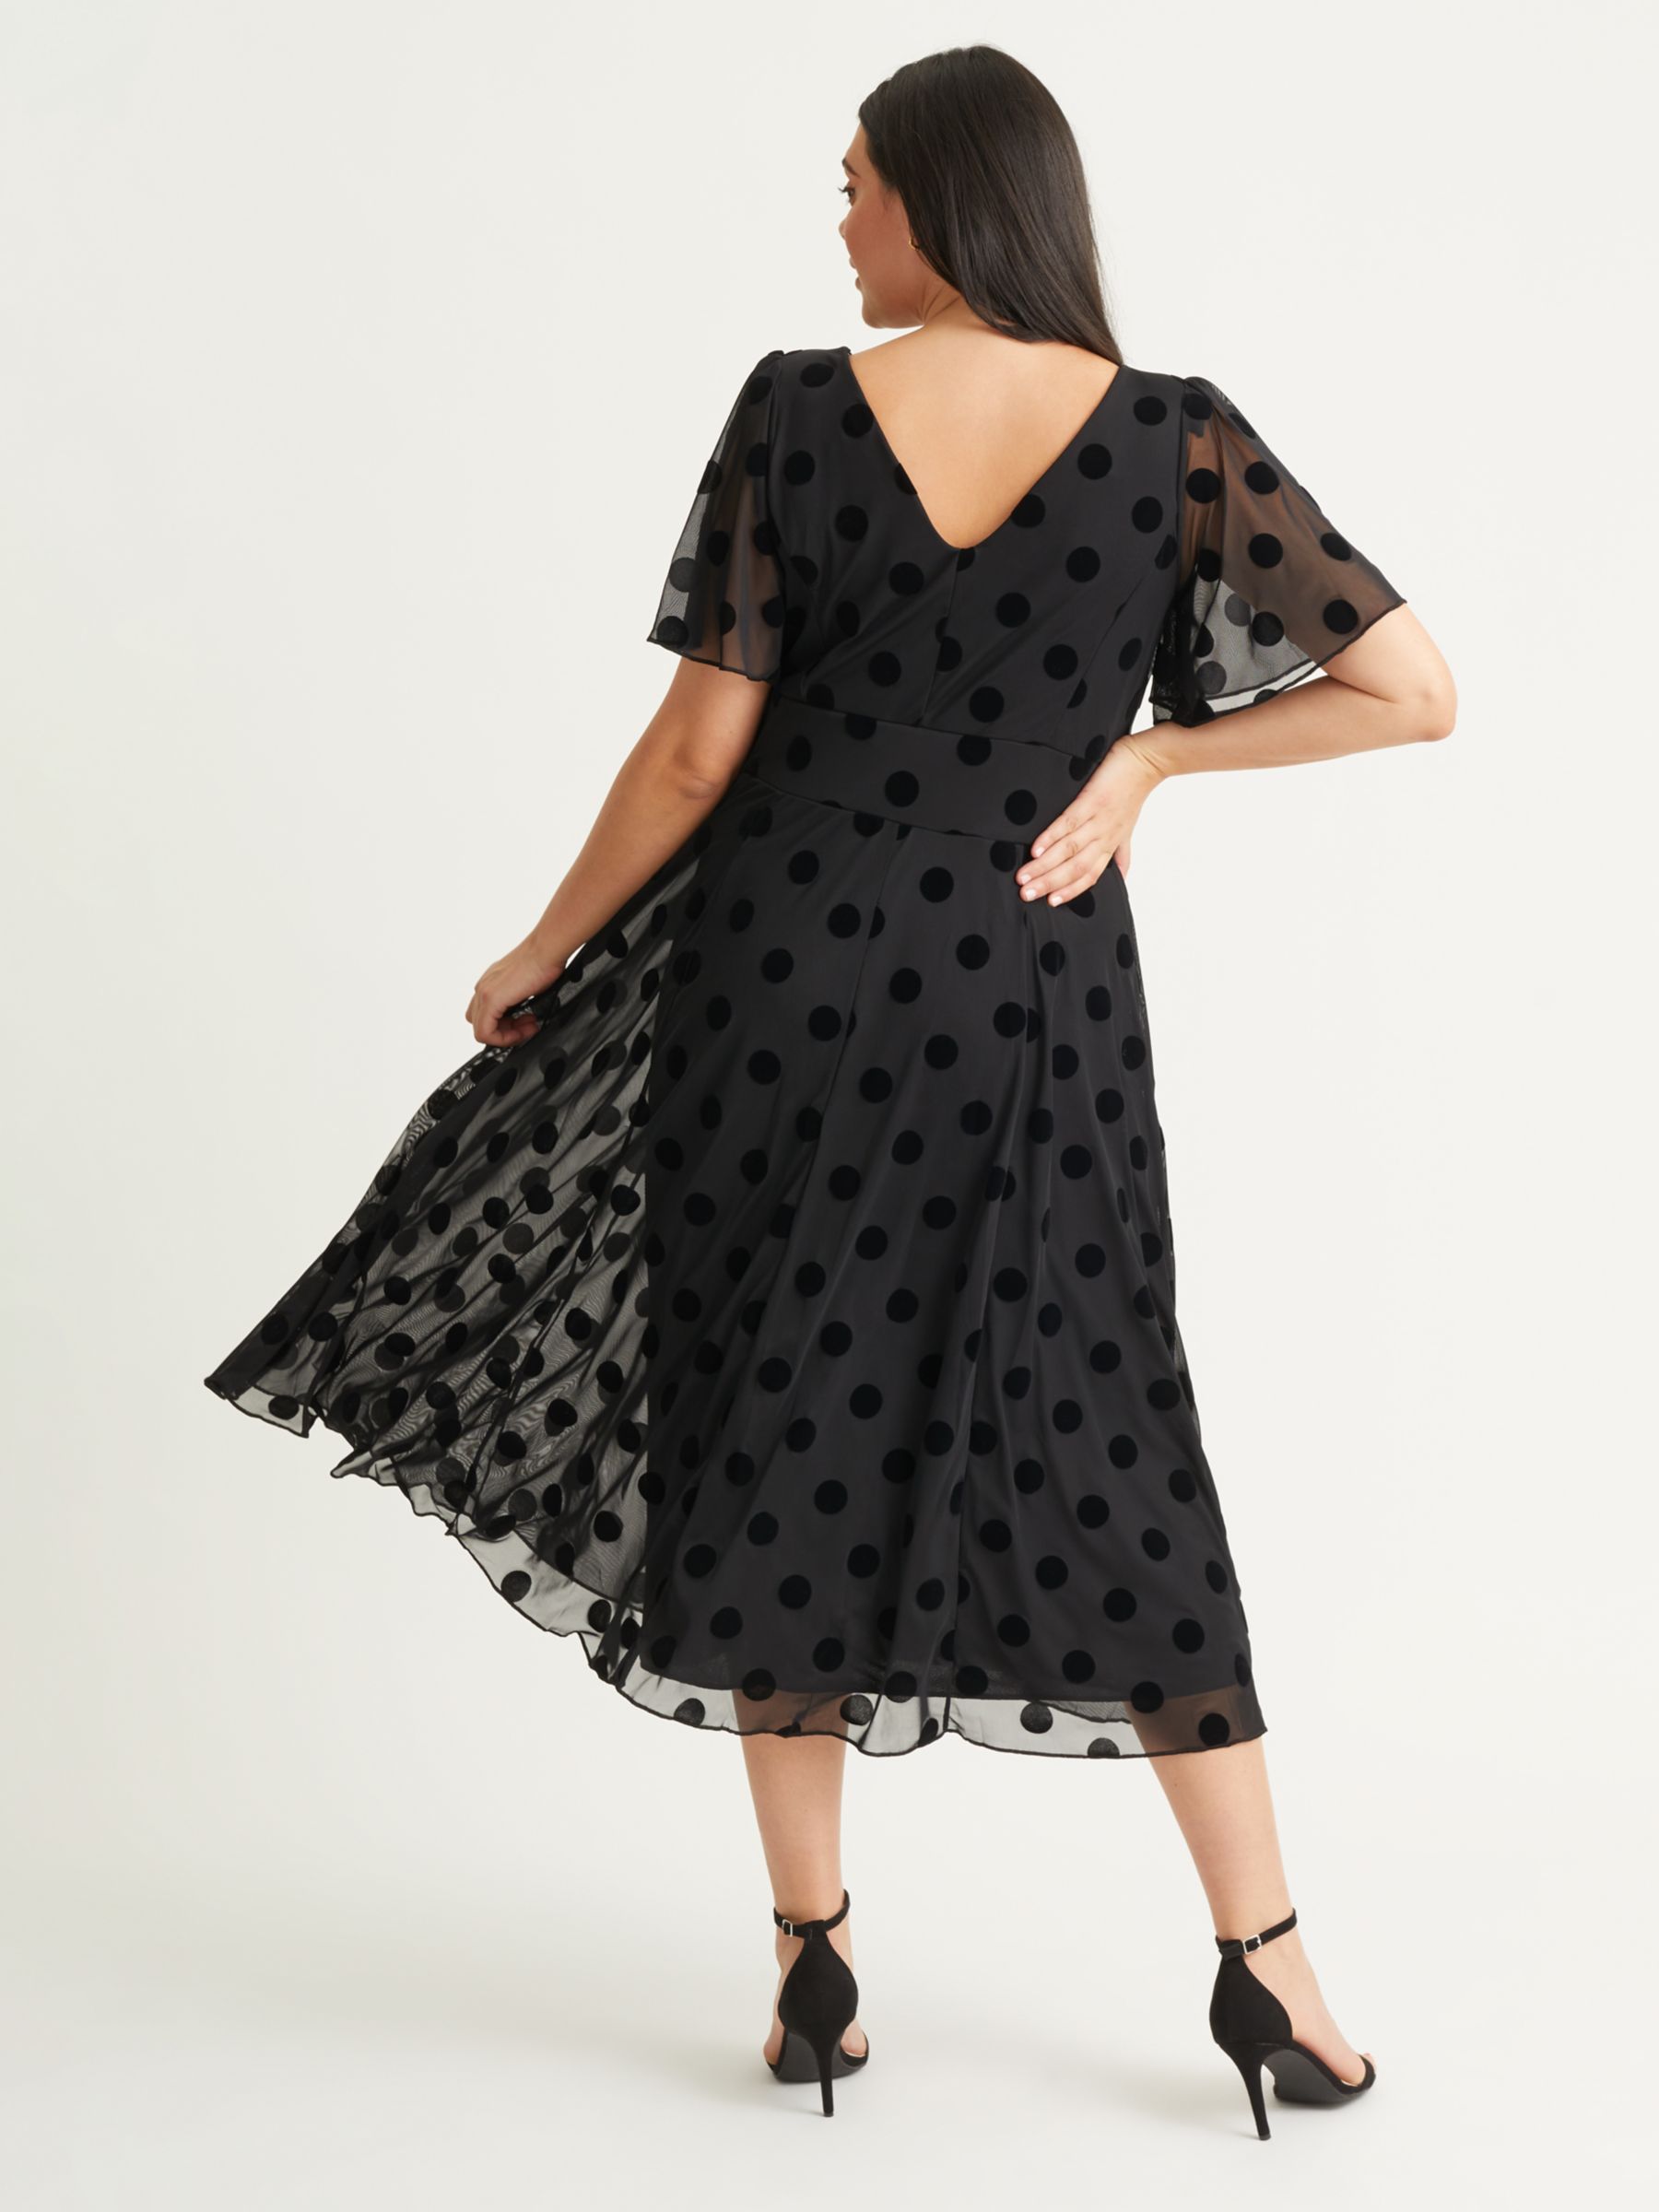 Scarlett & Jo Victoria Spot Print Angel Sleeve Midi Dress, Black Flock, 24